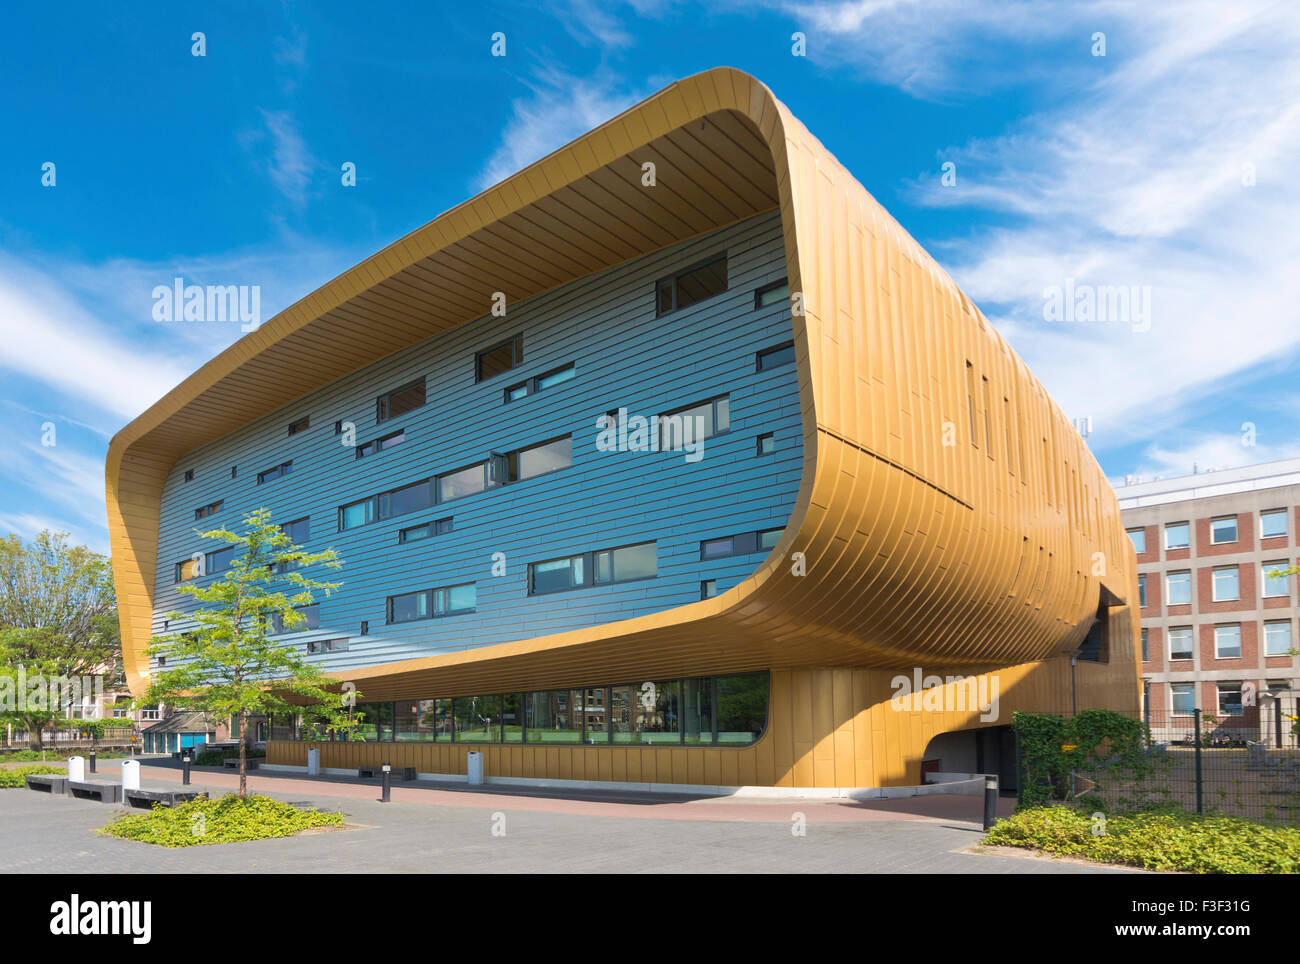 GRONINGEN, Holanda - Agosto 22, 2015: el exterior del centro de formación del UMCG, del centro médico universitario groninge Foto de stock